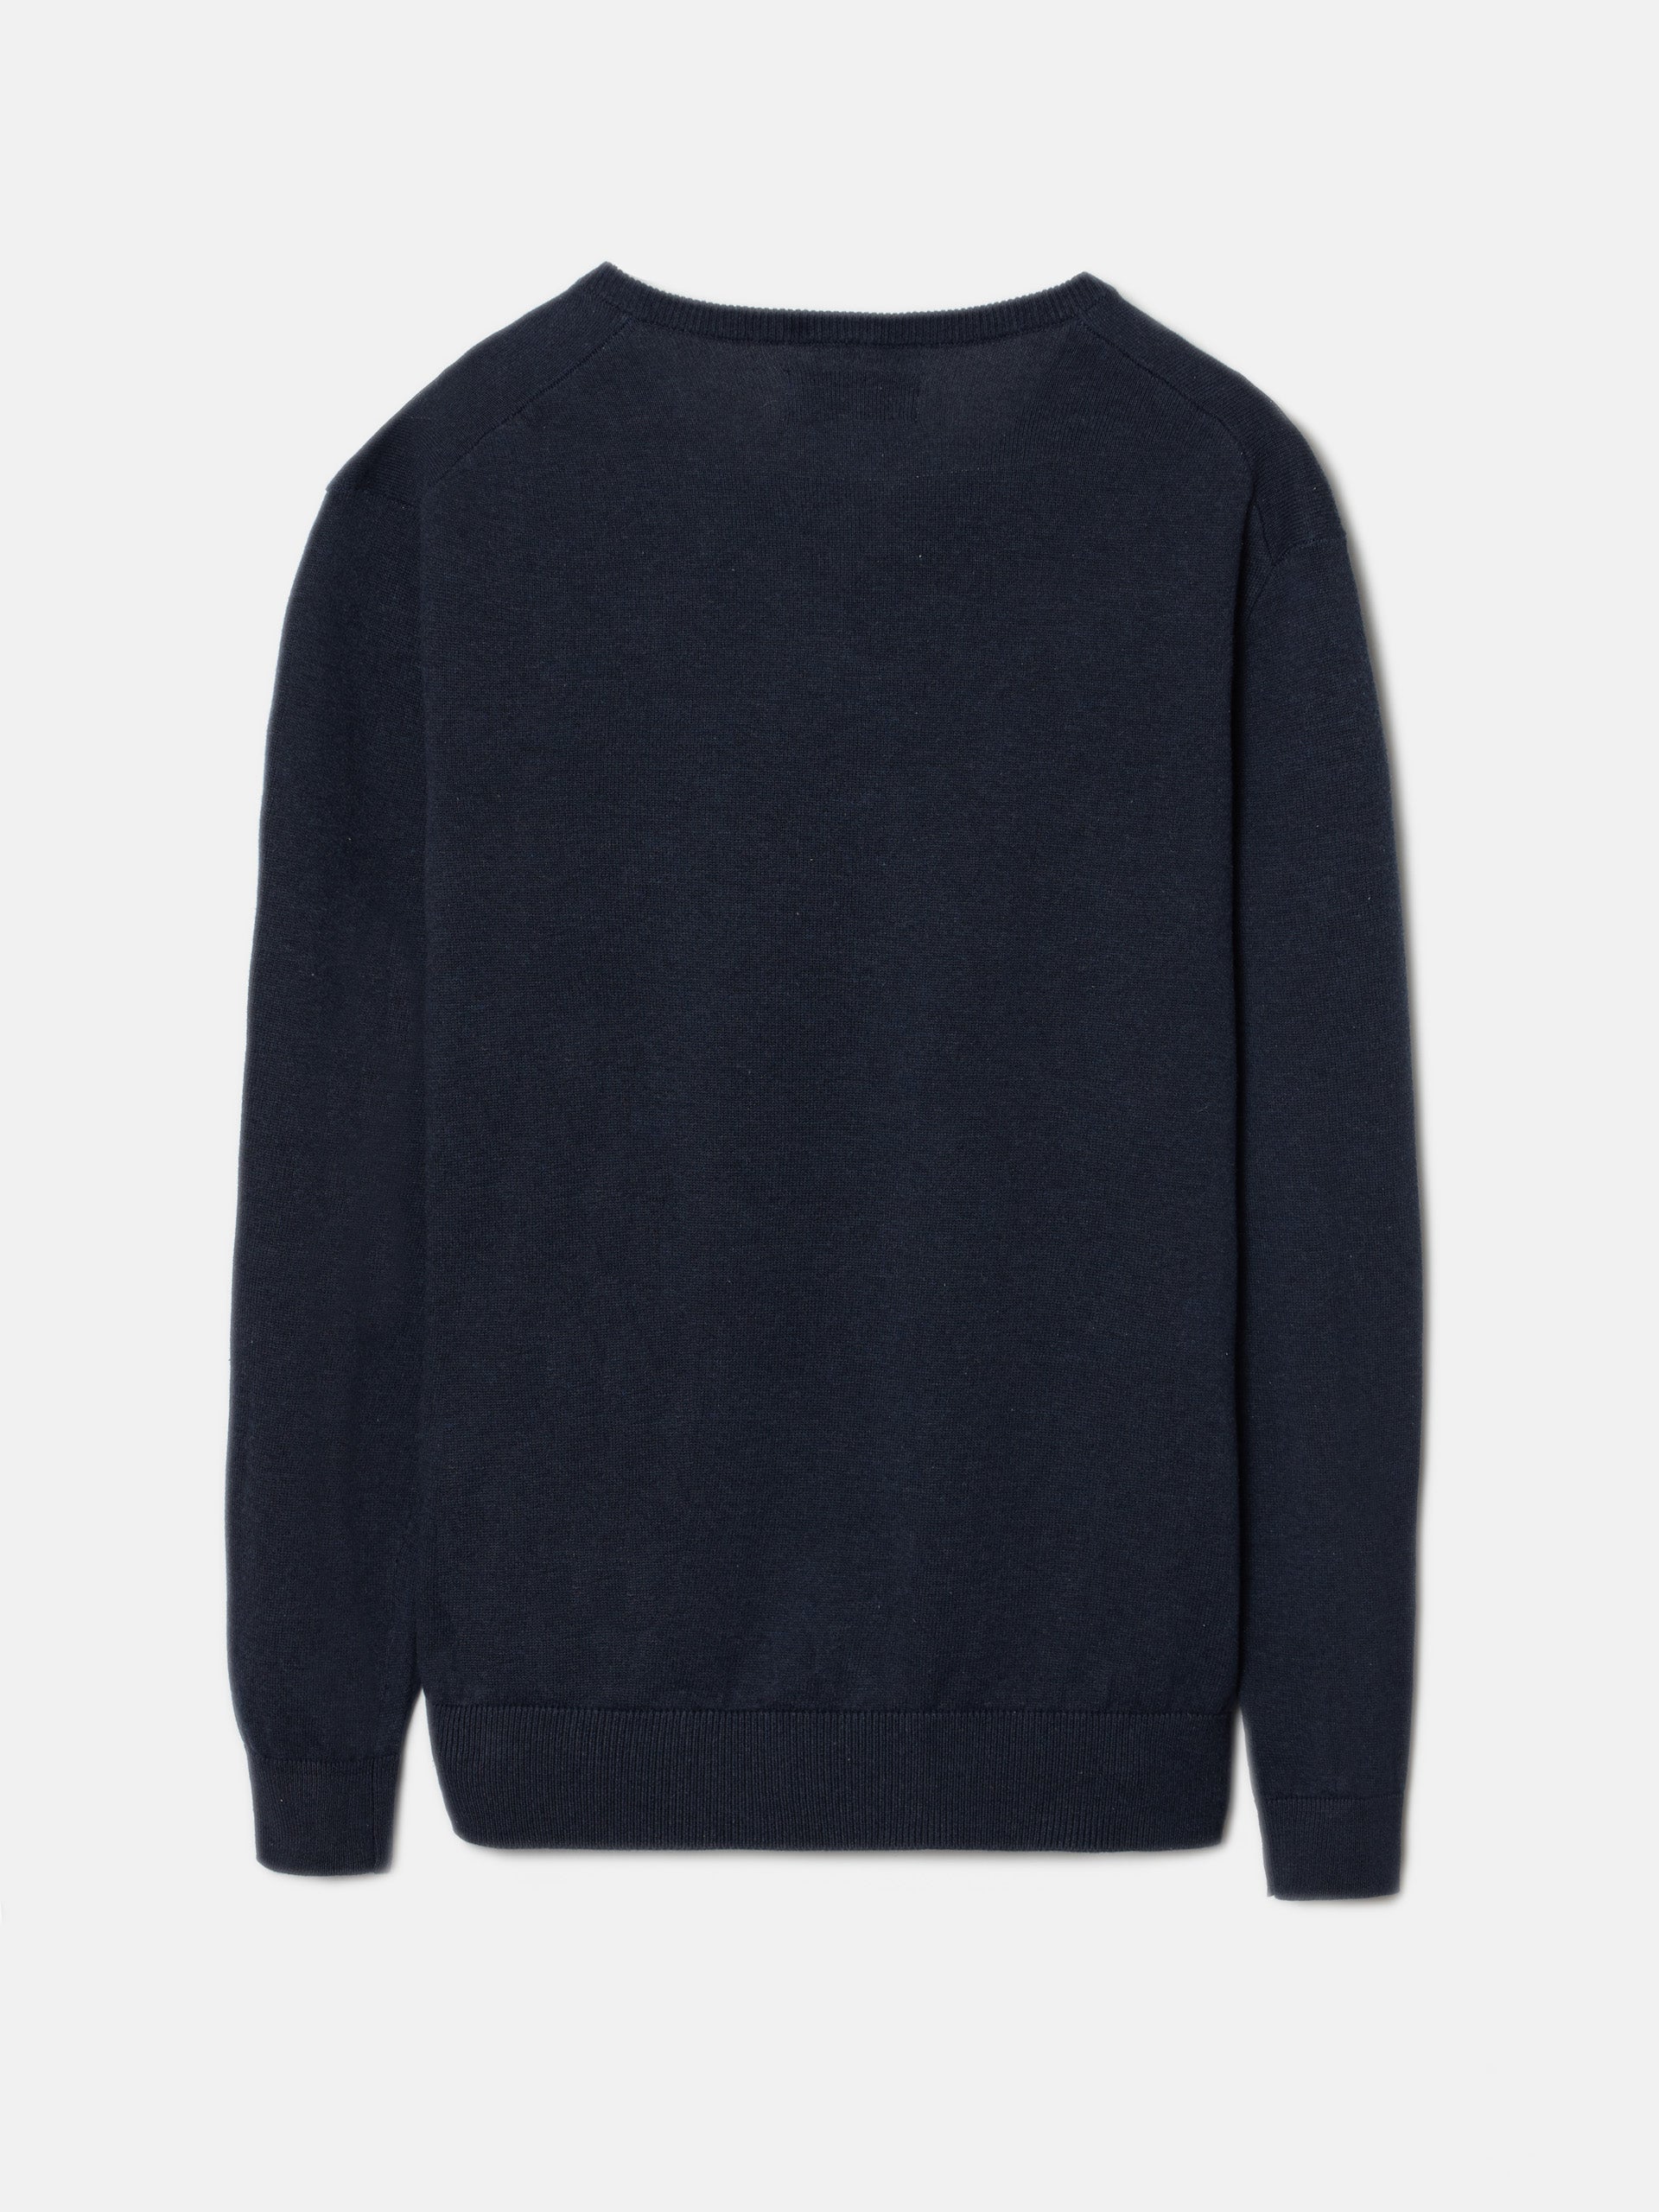 Navy blue V-neck sweater